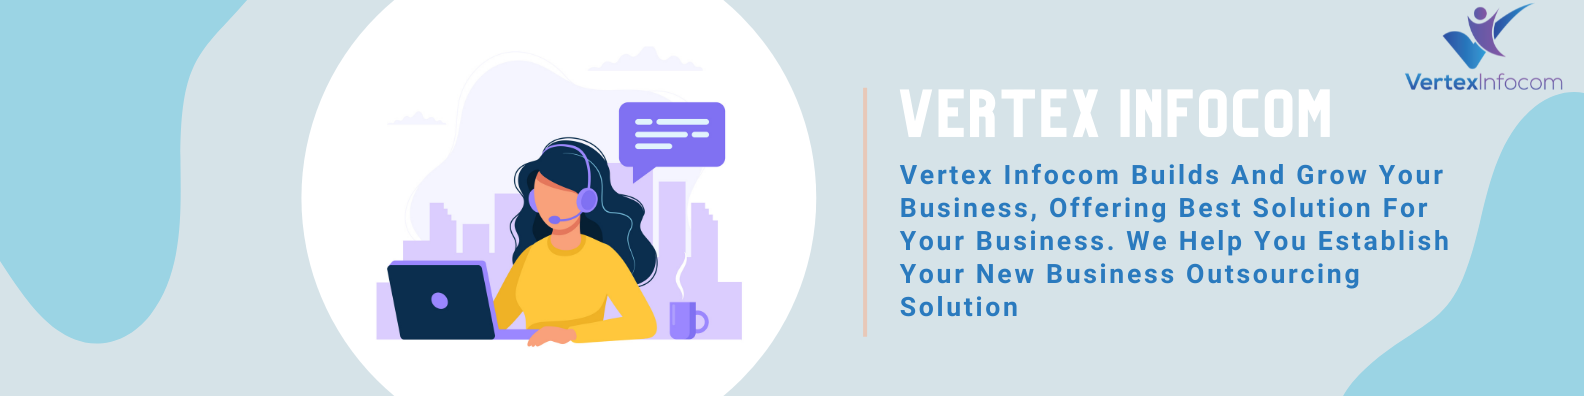 Vertex Infocom cover